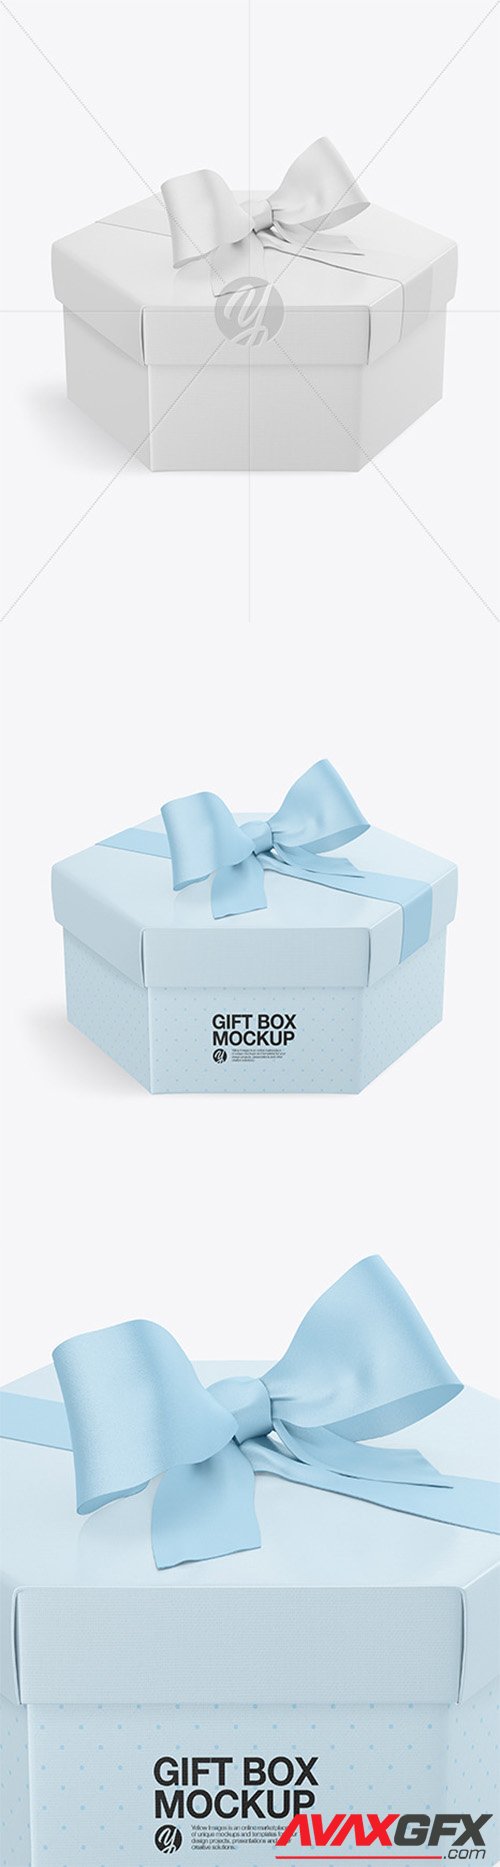 Gift Box Mockup 86191 TIF